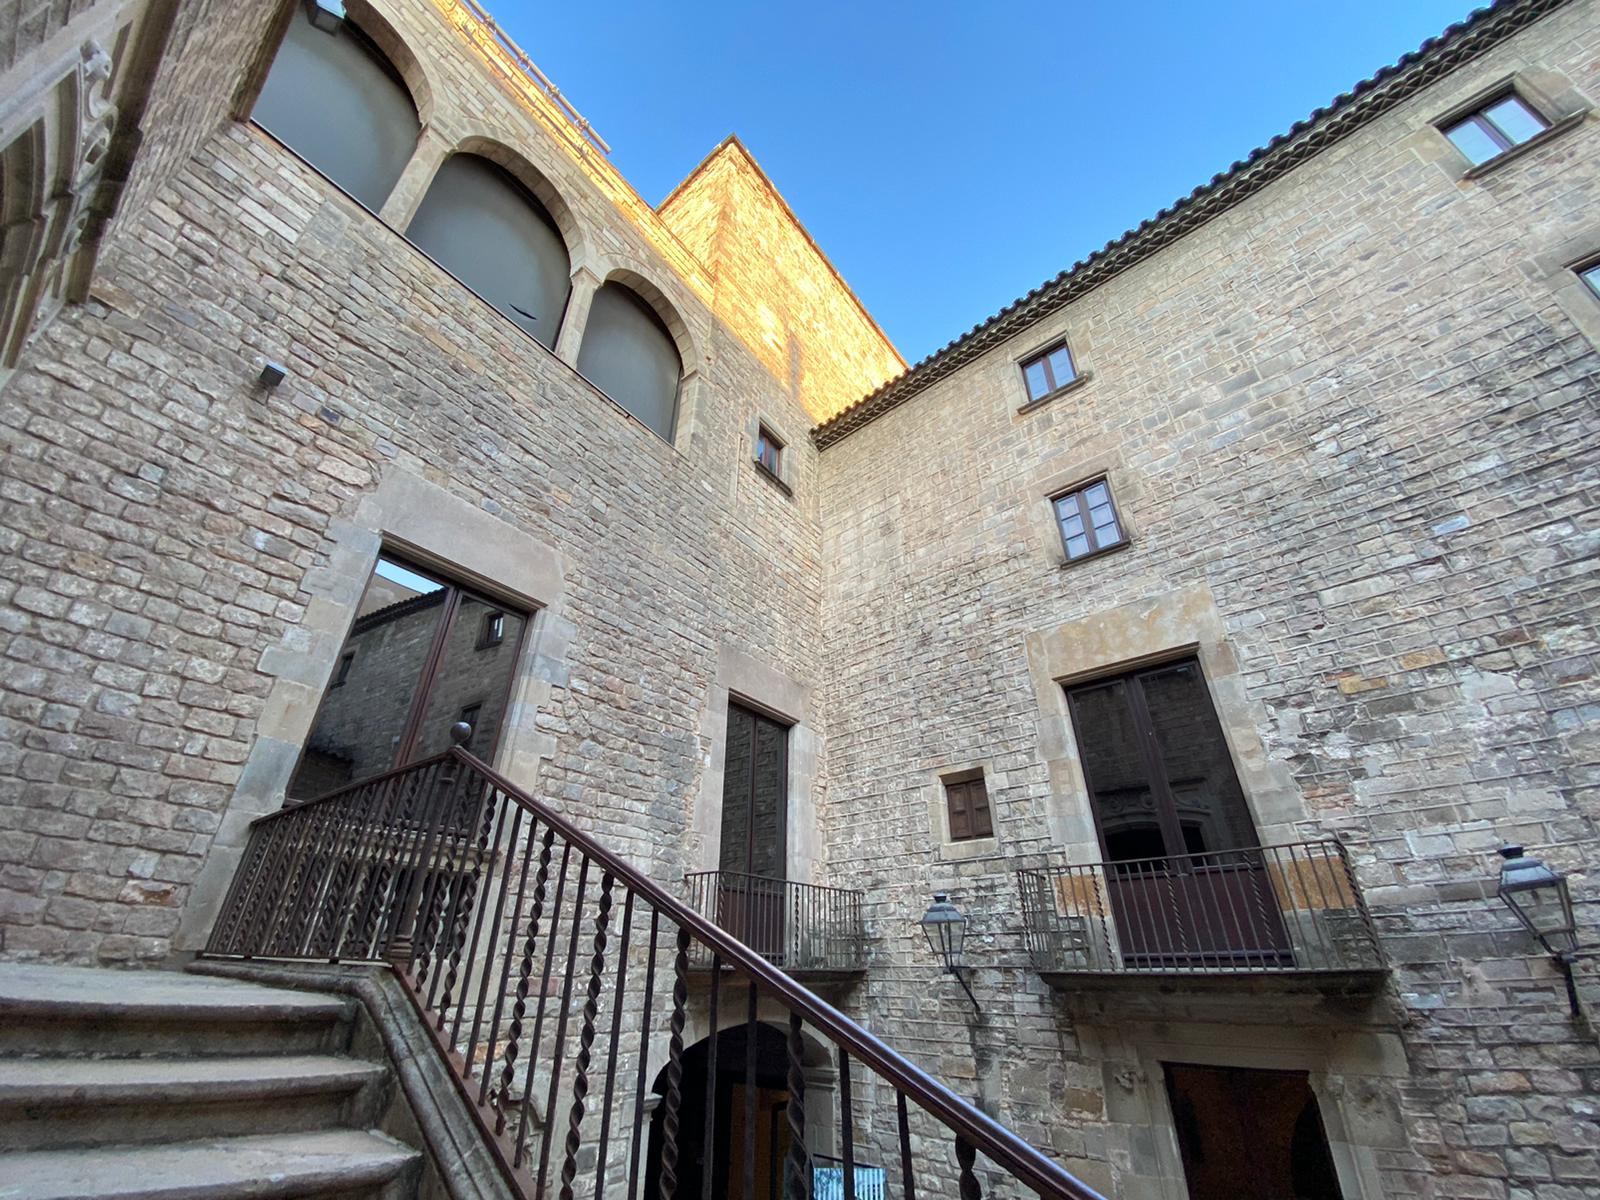 Entrada do museu pelo pátio interior e escadaria que passa para o andar principal. Típico layout da arquitetura gótica do século 13 e 14 (Foto: Barbara Cassou)